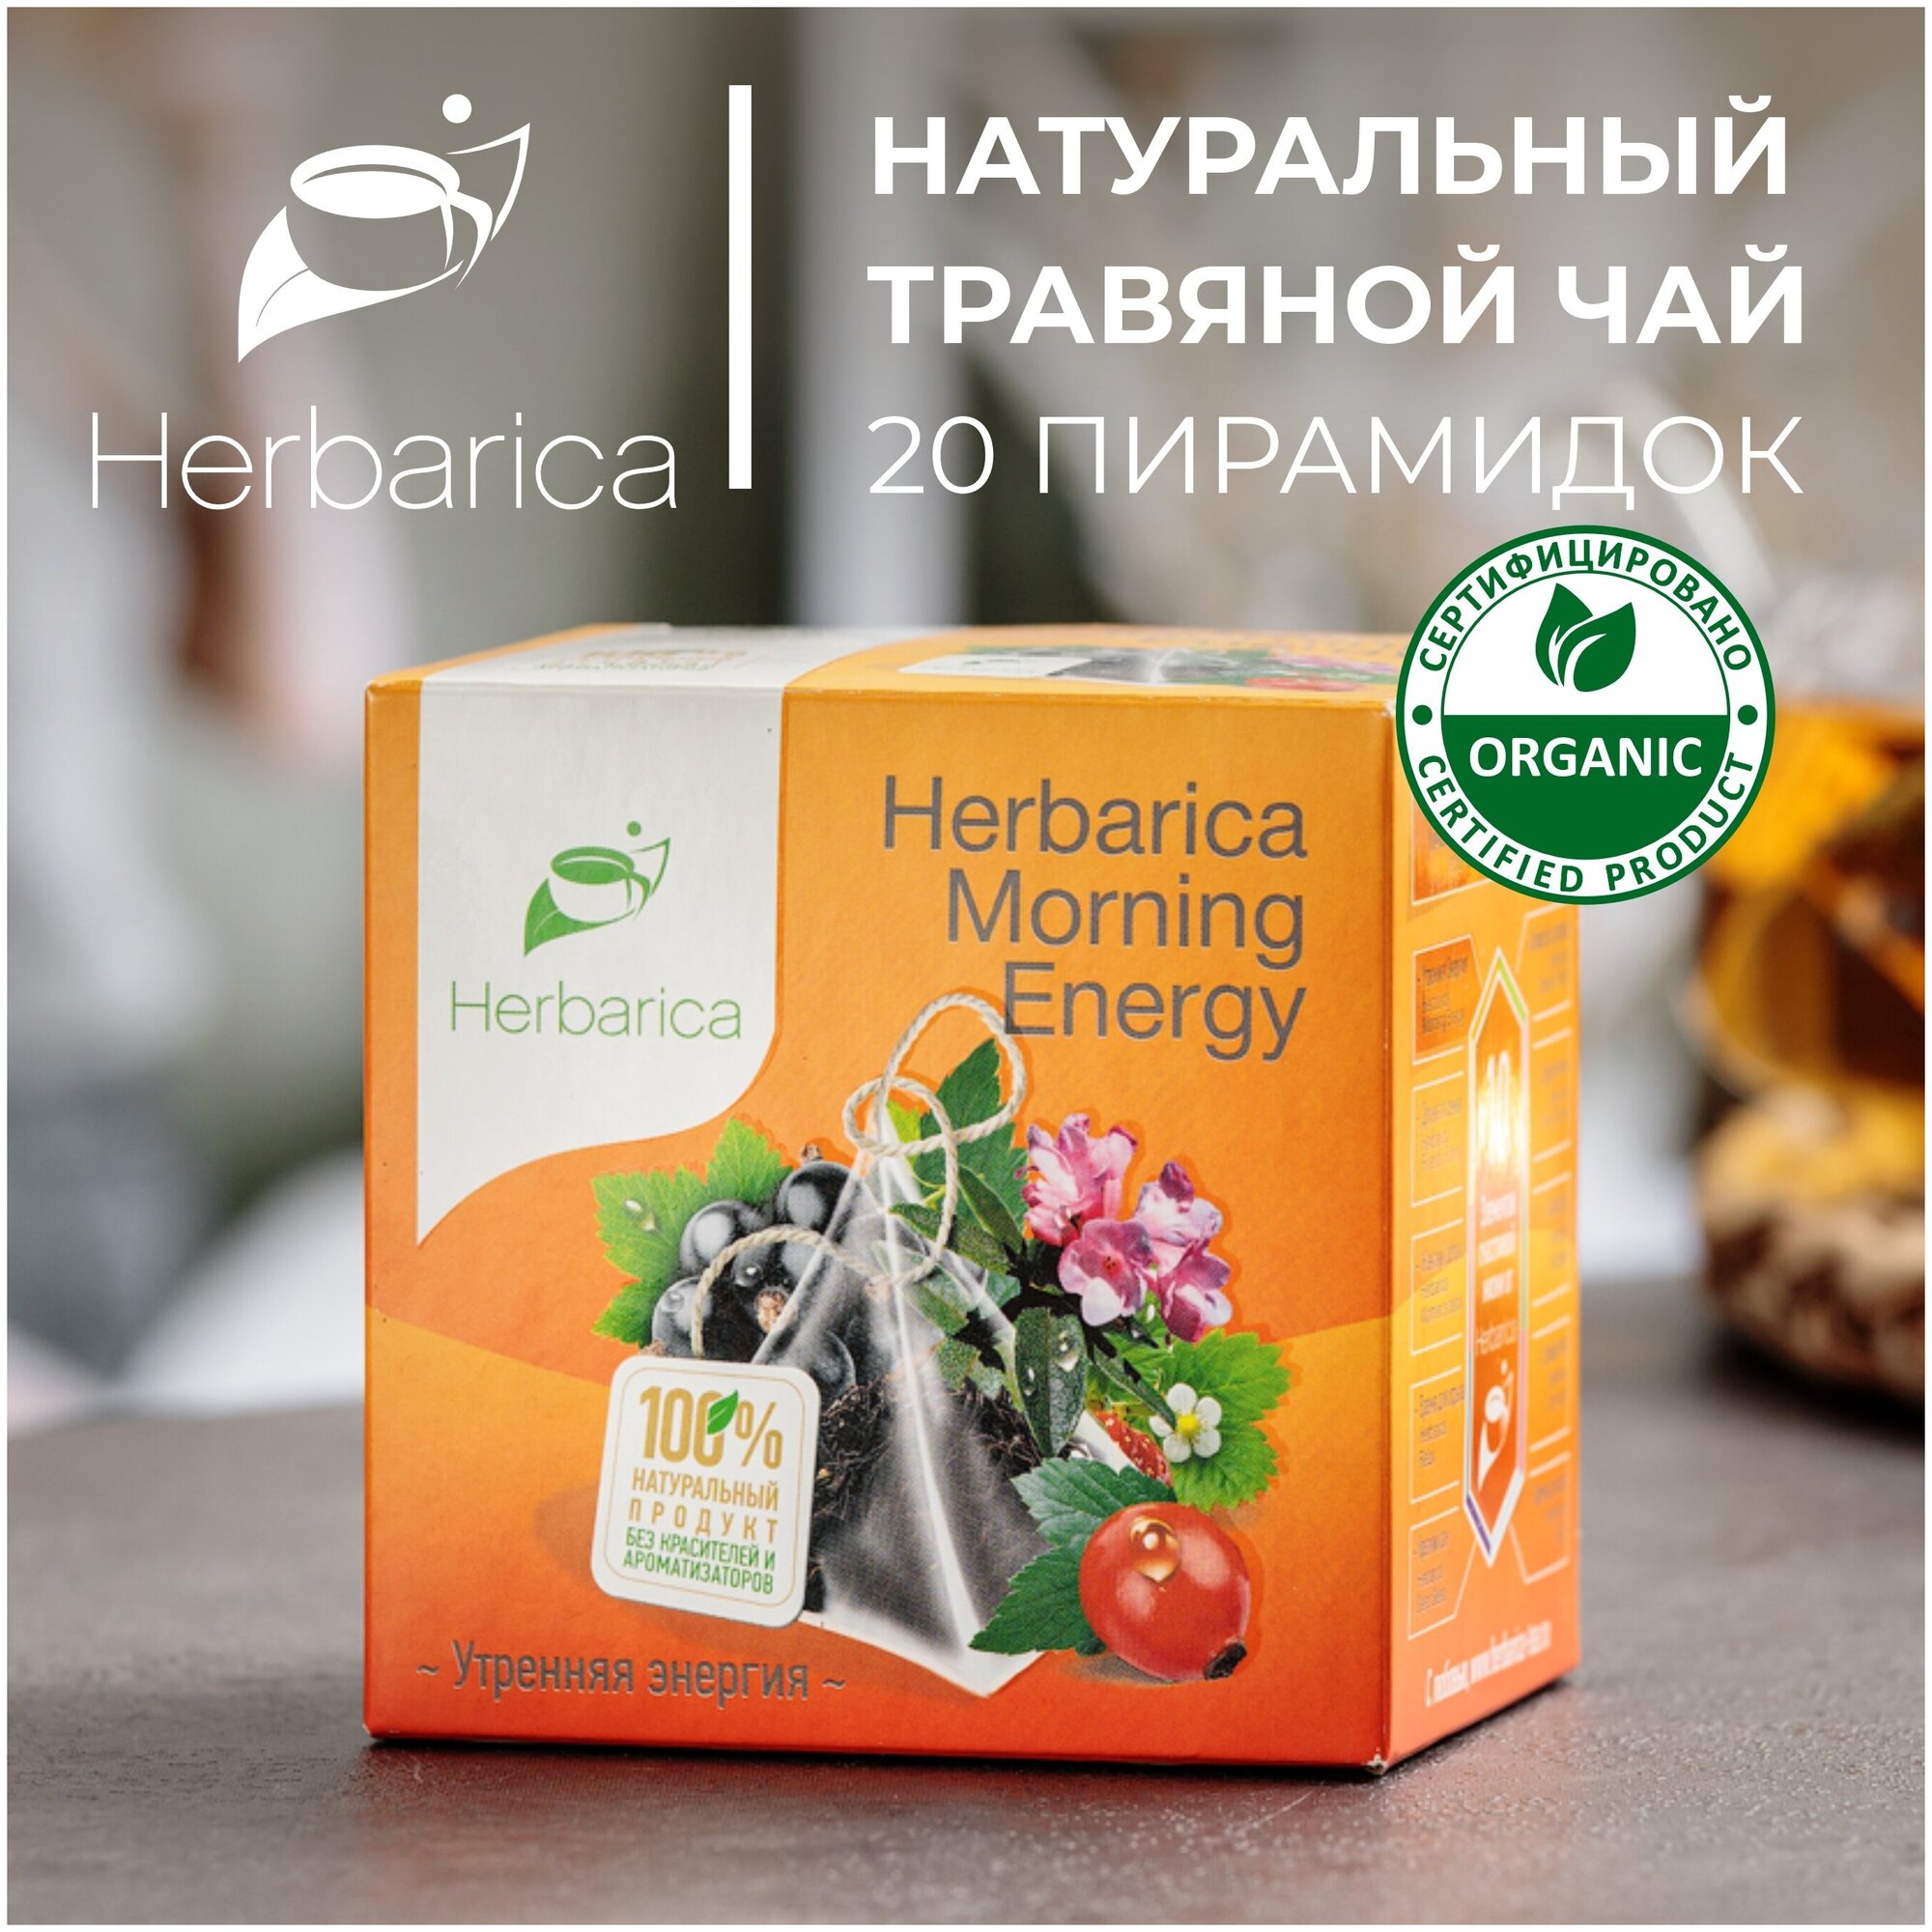 Herbarica Morning Energy Гербарика Утренняя энергия травяной чай 20 пир. листья смородины, земляники, лемонграсс, шиповник, саган-дайля, смородина